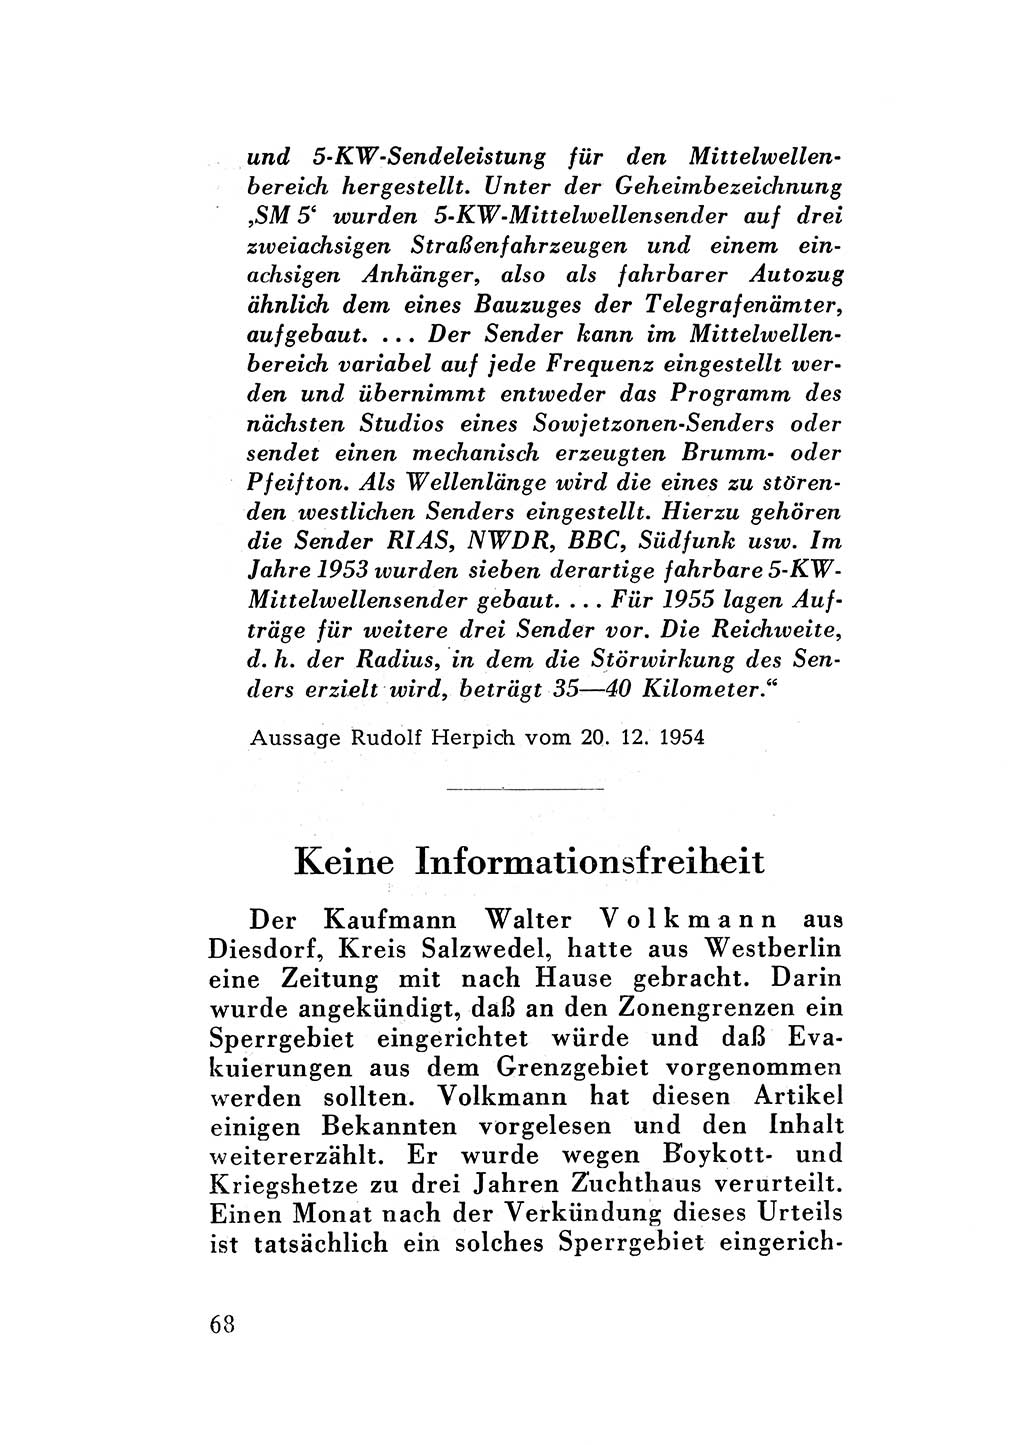 Katalog des Unrechts, Untersuchungsausschuß Freiheitlicher Juristen (UfJ) [Bundesrepublik Deutschland (BRD)] 1956, Seite 68 (Kat. UnR. UfJ BRD 1956, S. 68)